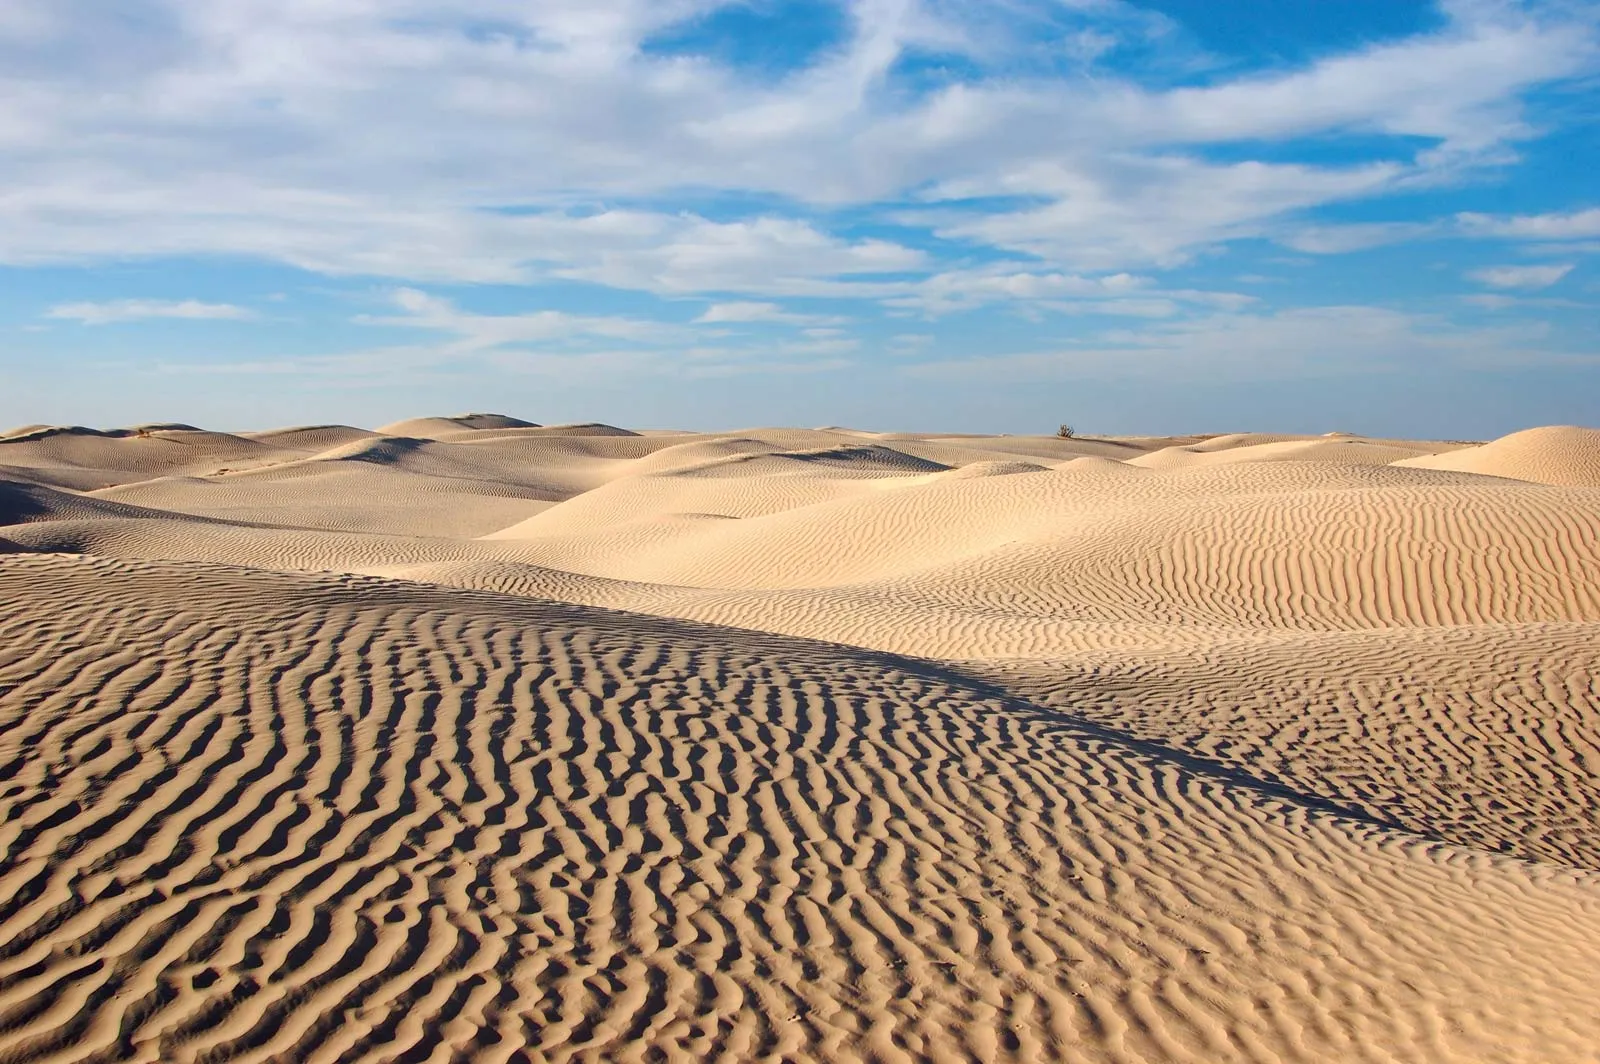 Image of the Sahara desert